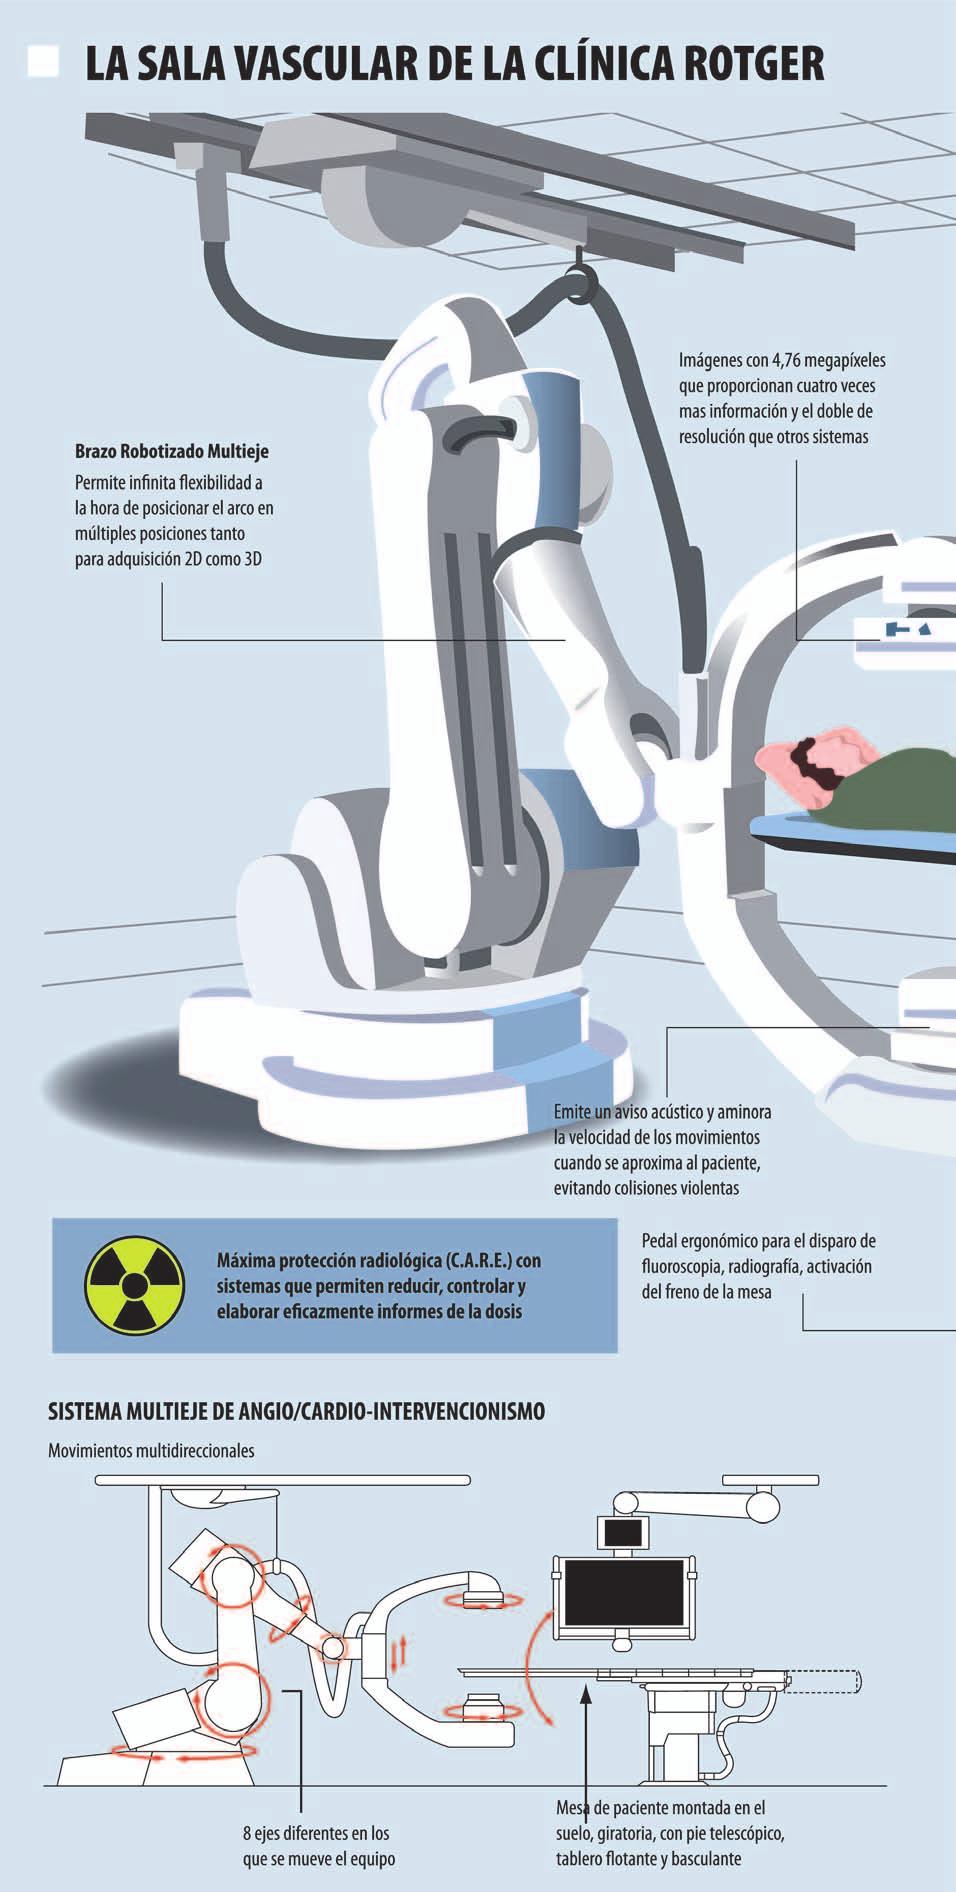 12 Del 30 de Enero al 12 de Febrero de 2012 Salut i Força La Clínica Rotger instalará la primera sala vascular con brazo robotizado de la Sanidad privada en España, la Siemens Artis Zeego, que le